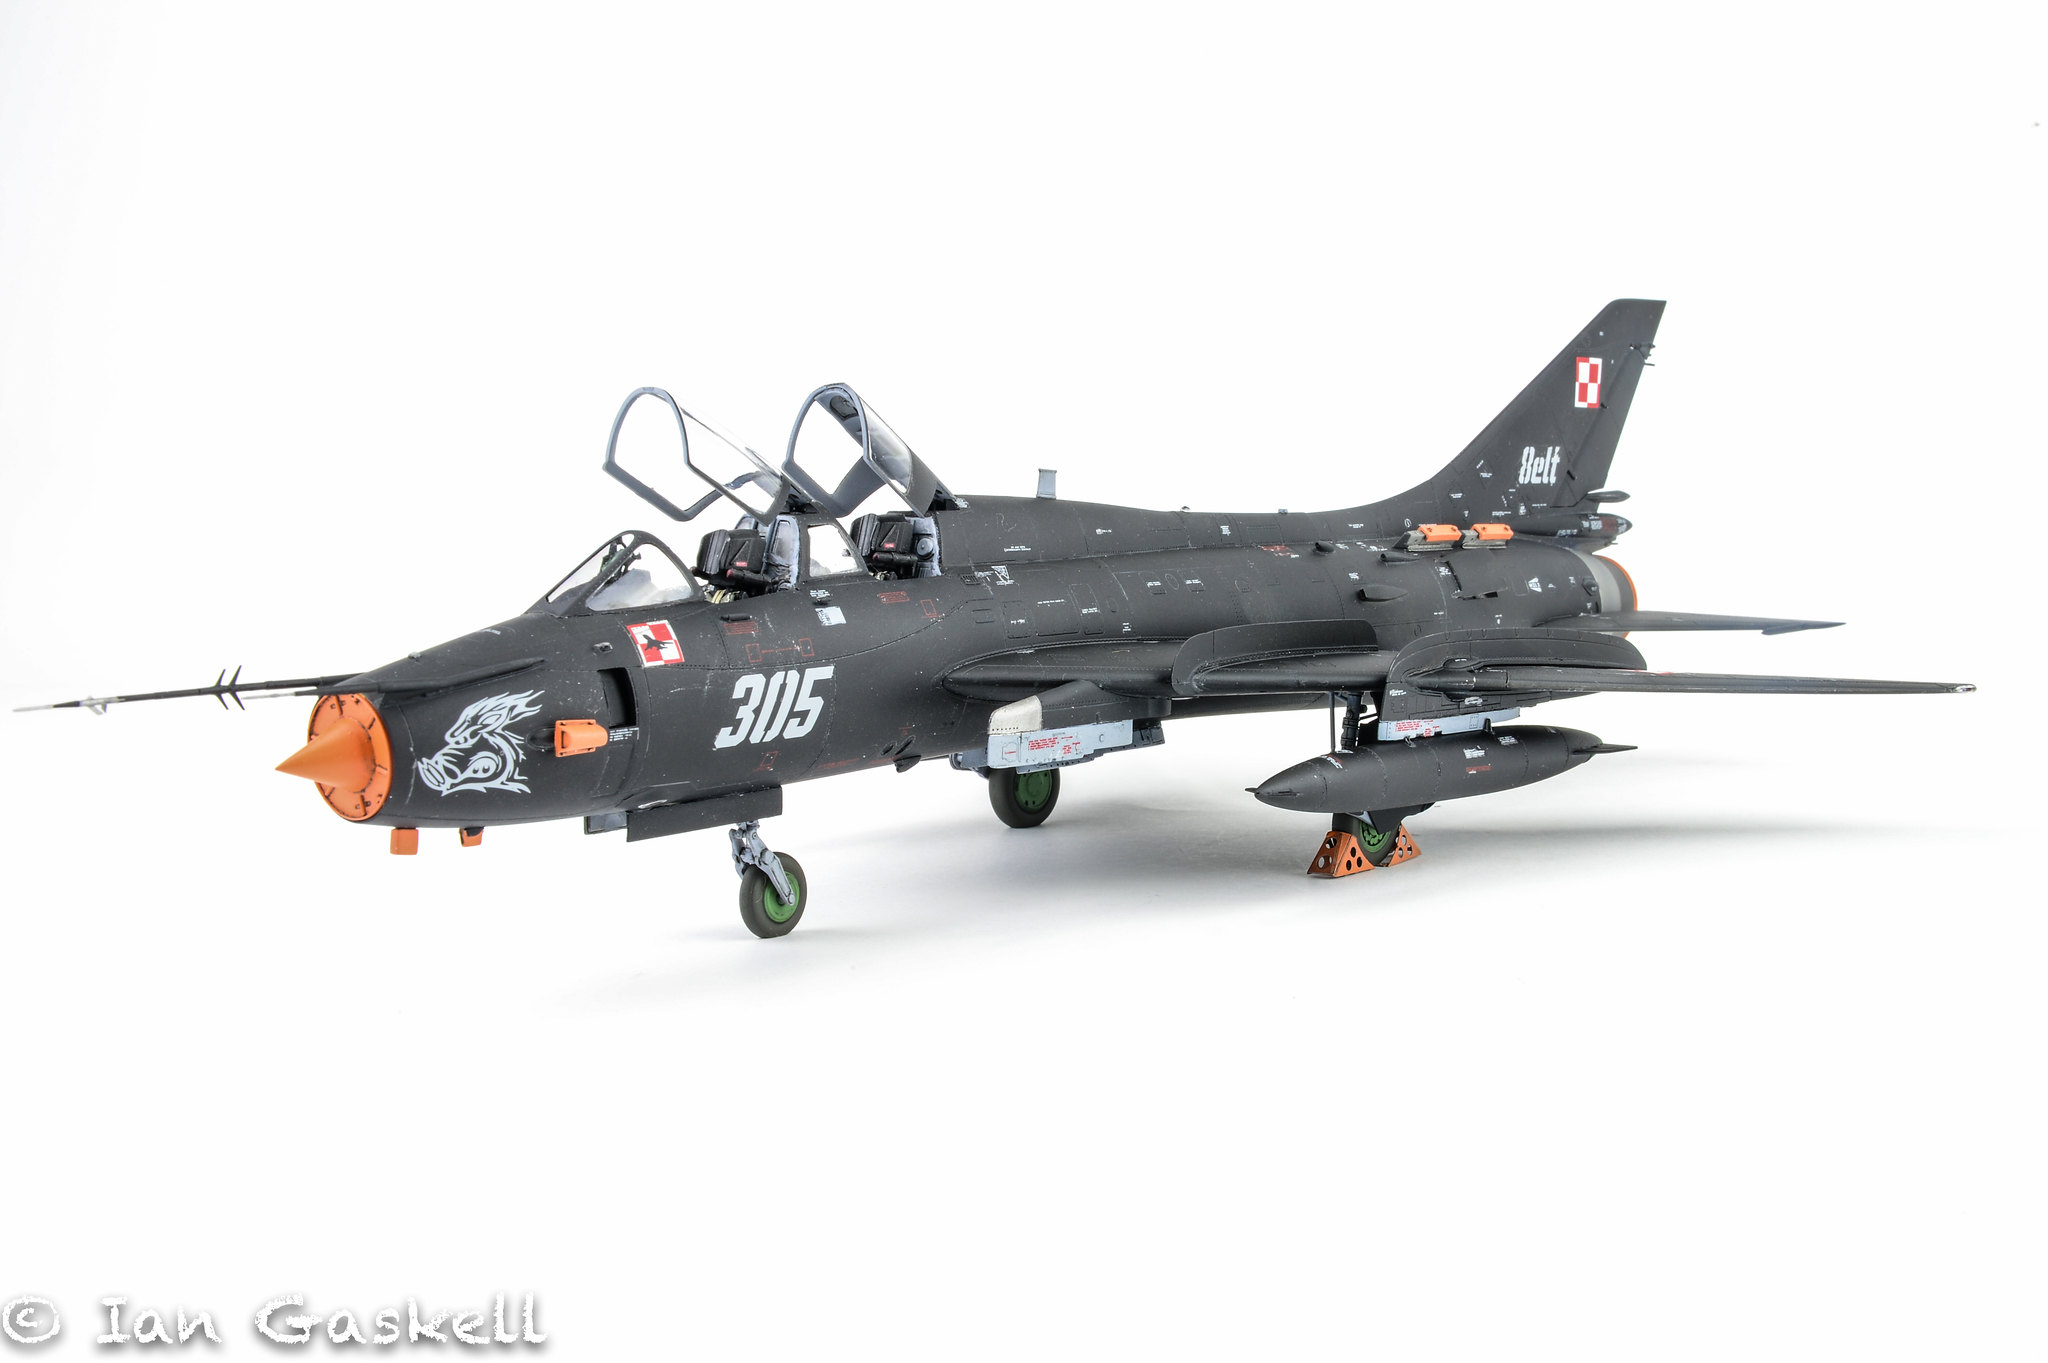 Ian Gaskell 1:48-as Kitty Hawk Su-17/22 Fitter makettje lengyel színekben. Forrás: Flickr, teljes cikk: Model Aircraft magazin 2019/10